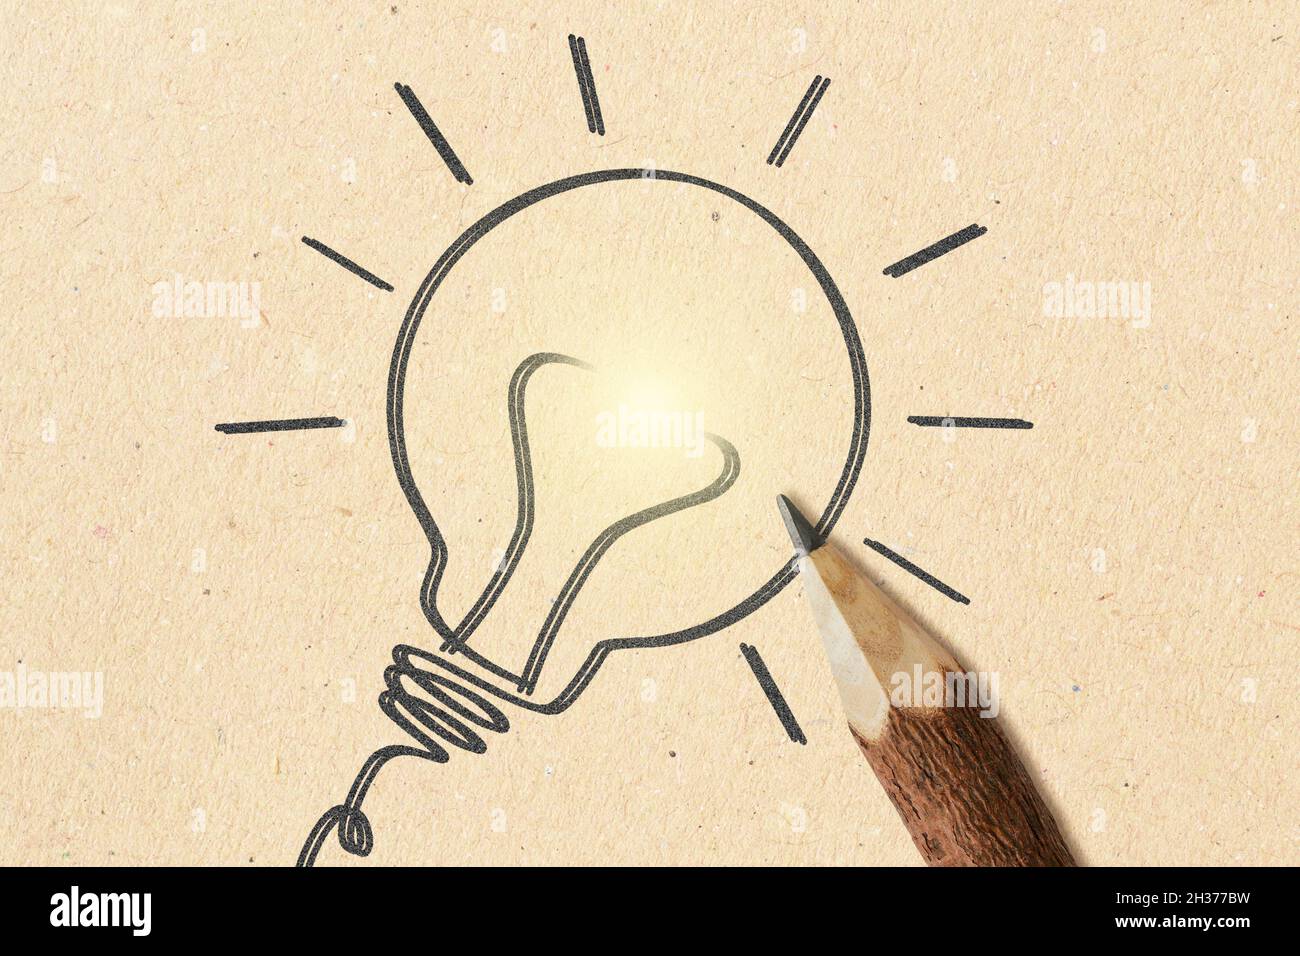 Handgezeichnete Glühbirne mit Holzstift auf rezyled Papier Hintergrund - Konzept der kreativen Idee und Ökologie Stockfoto